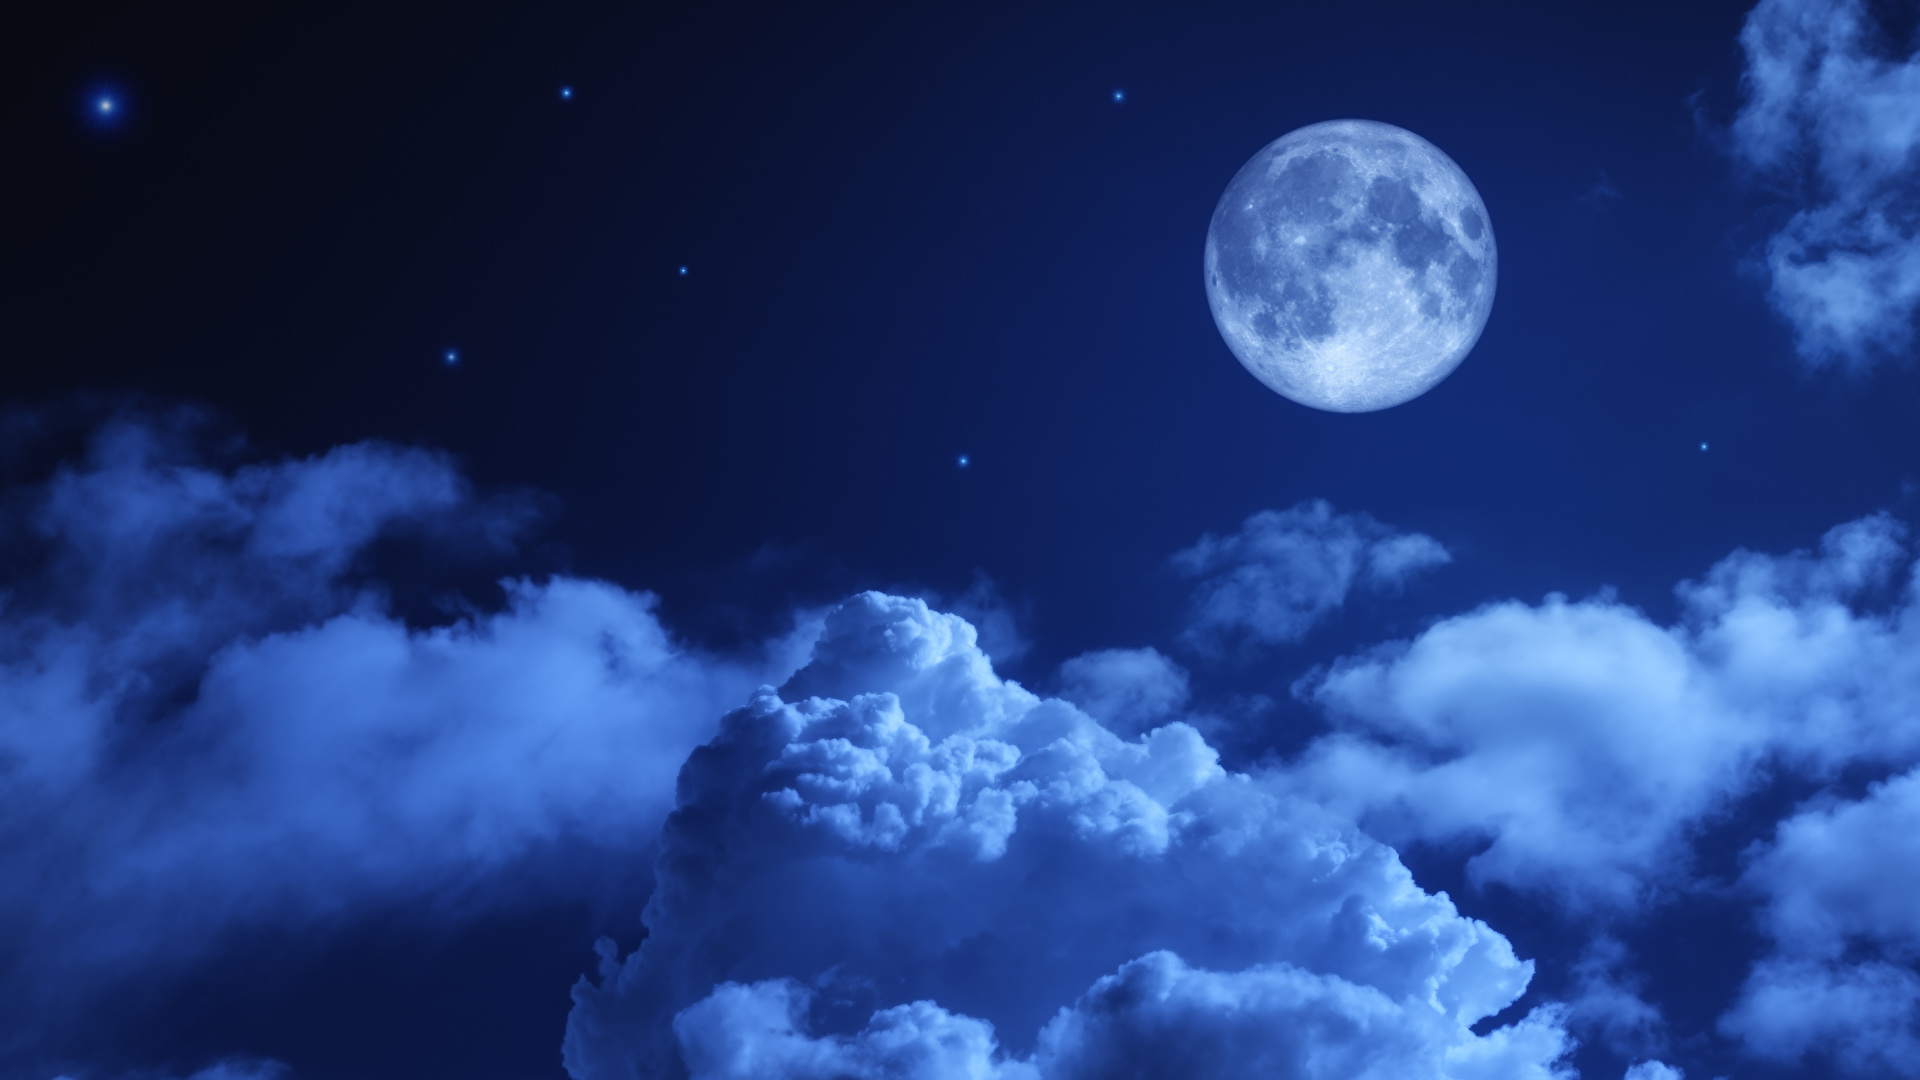 壁紙 1920x1080 空 夜 月 雲 自然 ダウンロード 写真